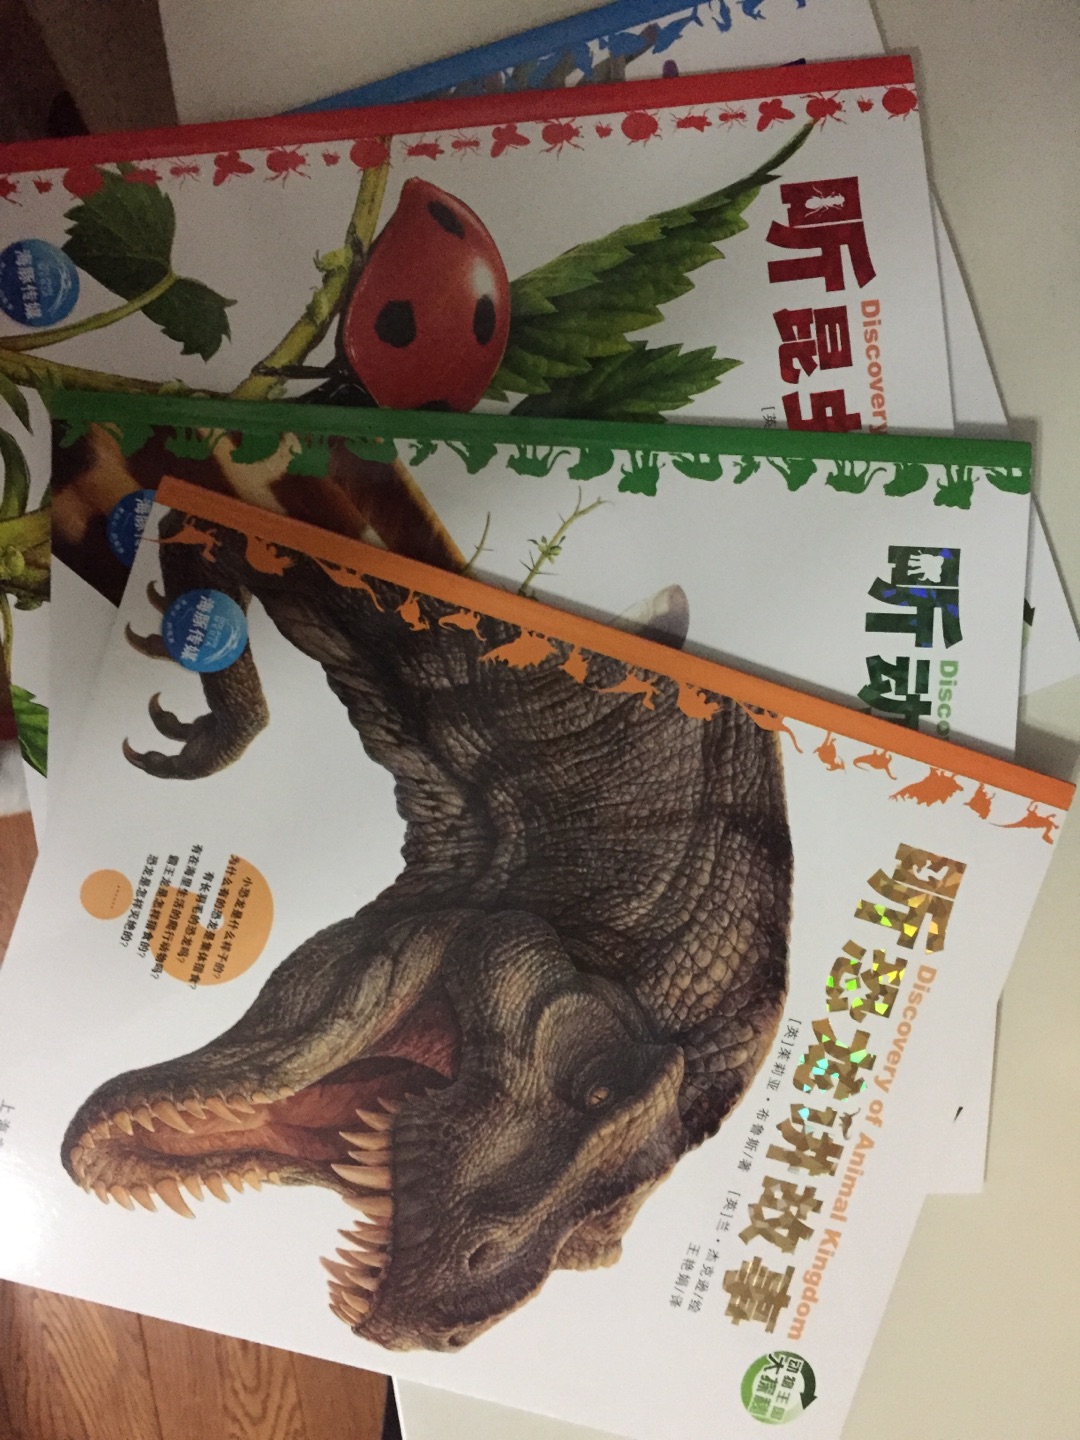 老师推荐的书，分为四个内容，海洋生物、昆虫、动物、恐龙，类似简单的十万个为什么。